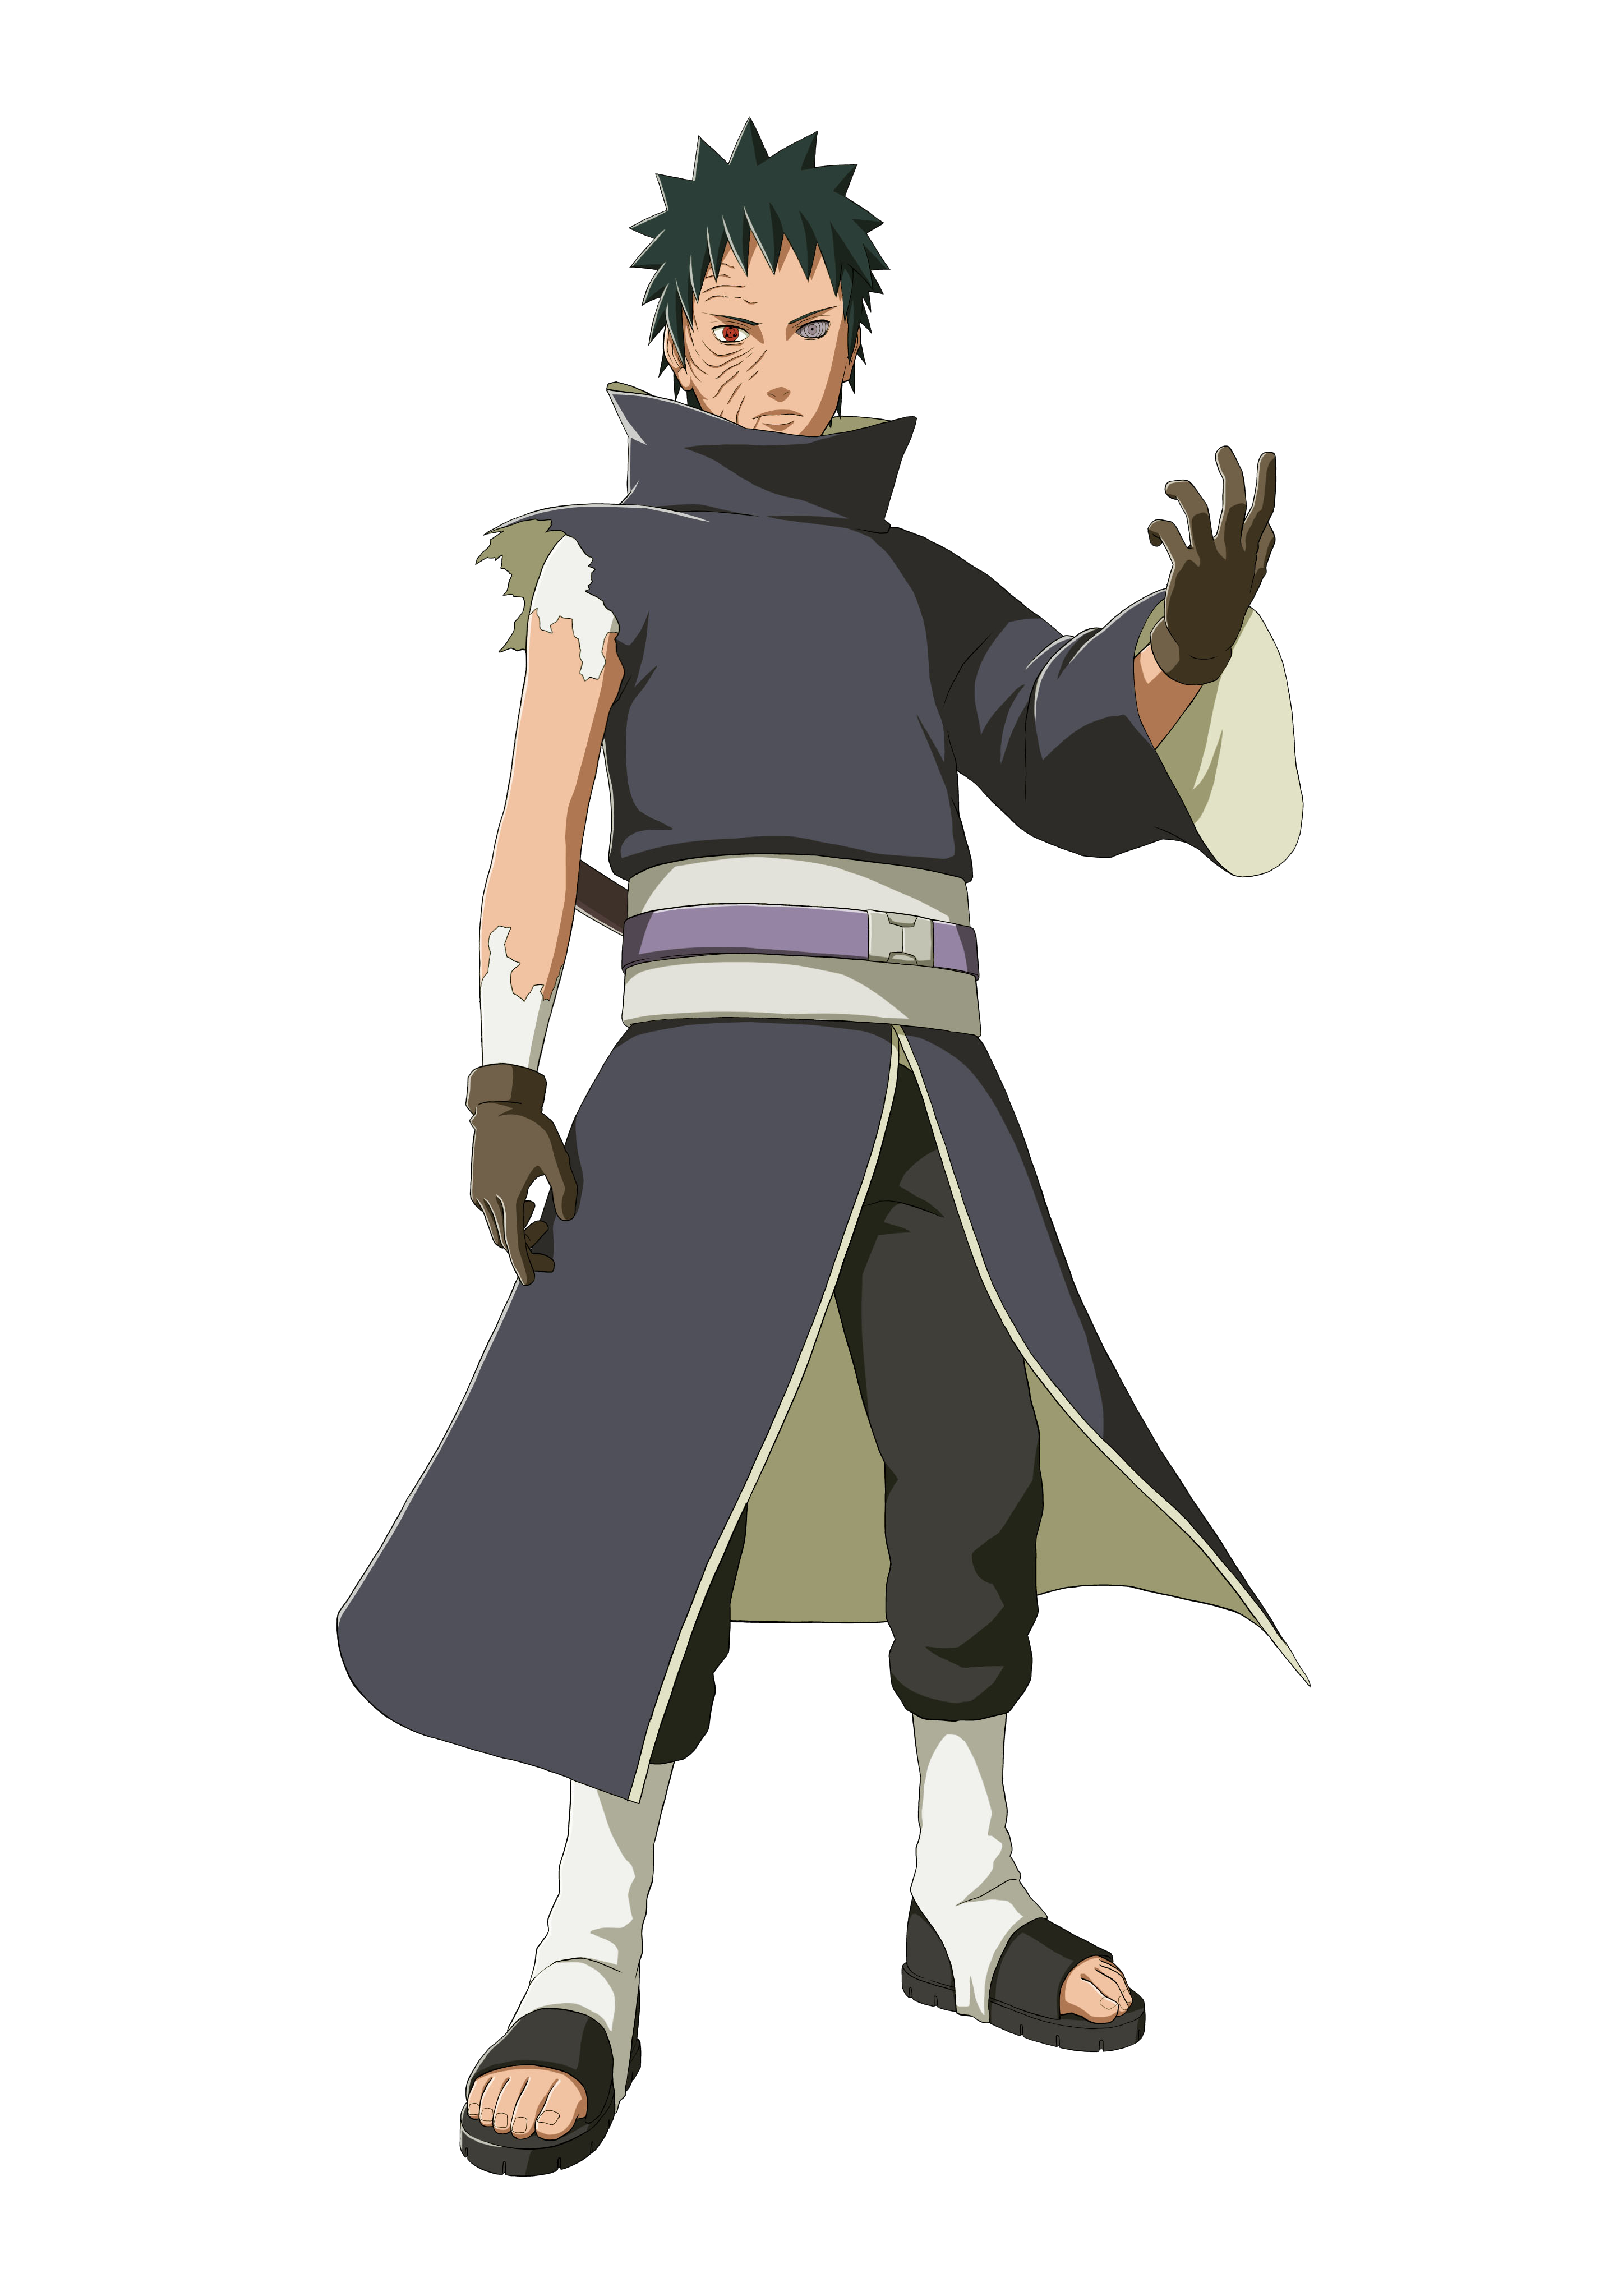 Obito Uchiha, Wiki Naruto, a enciclopédia sobre Naruto! Wiki